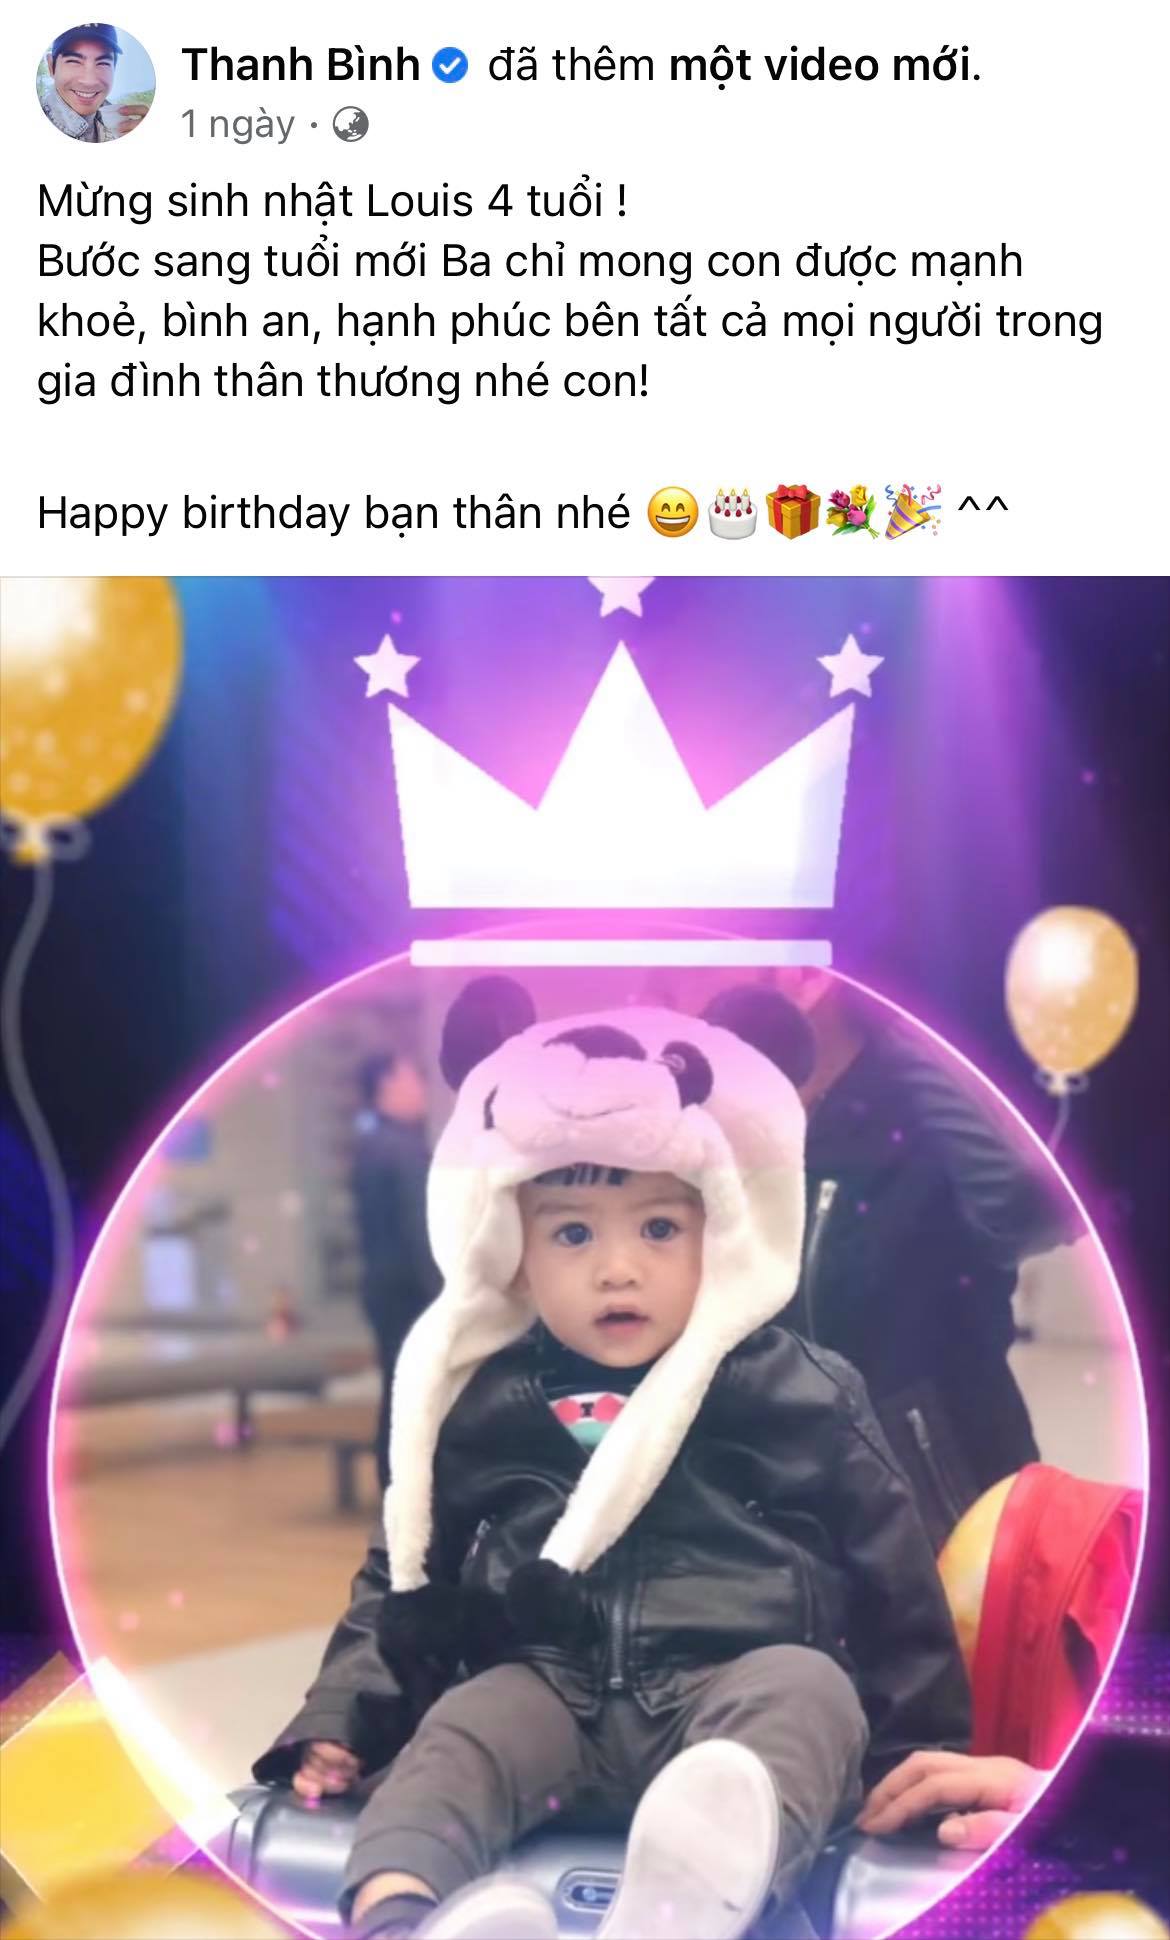 Ngọc Lan kỳ quặc tổ chức sinh nhật cho con trai Thanh Bình vắng mặt nhưng có hành động đặc biệt dành cho bé - Ảnh 5.